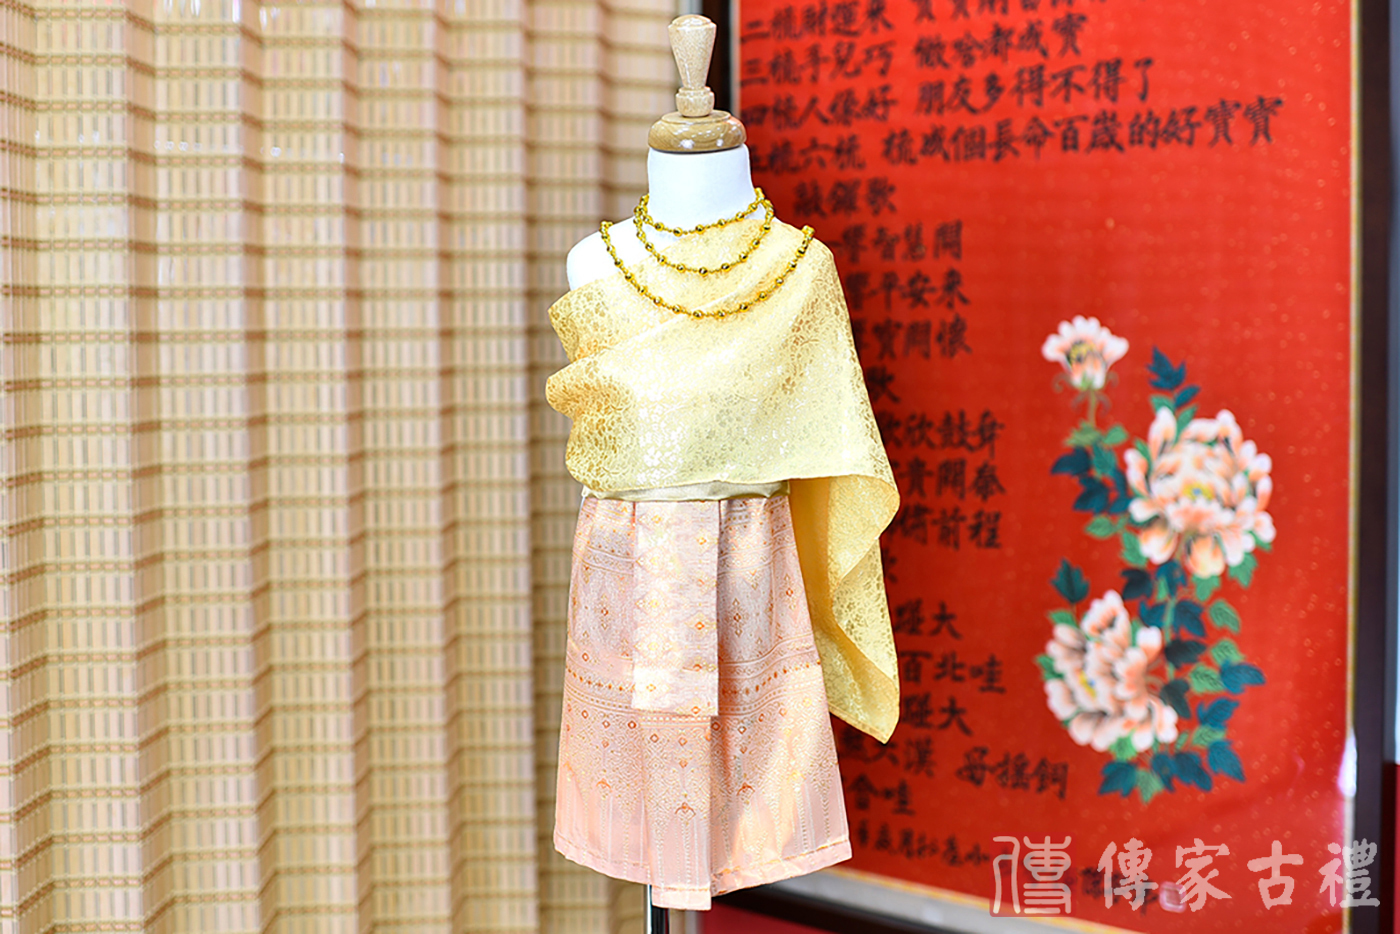 2024-02-22小孩皇室泰服古裝禮服。金色的綢緞上衣搭配粉橘色泰國圖案紋路裙裝的泰式古裝禮服。照片集